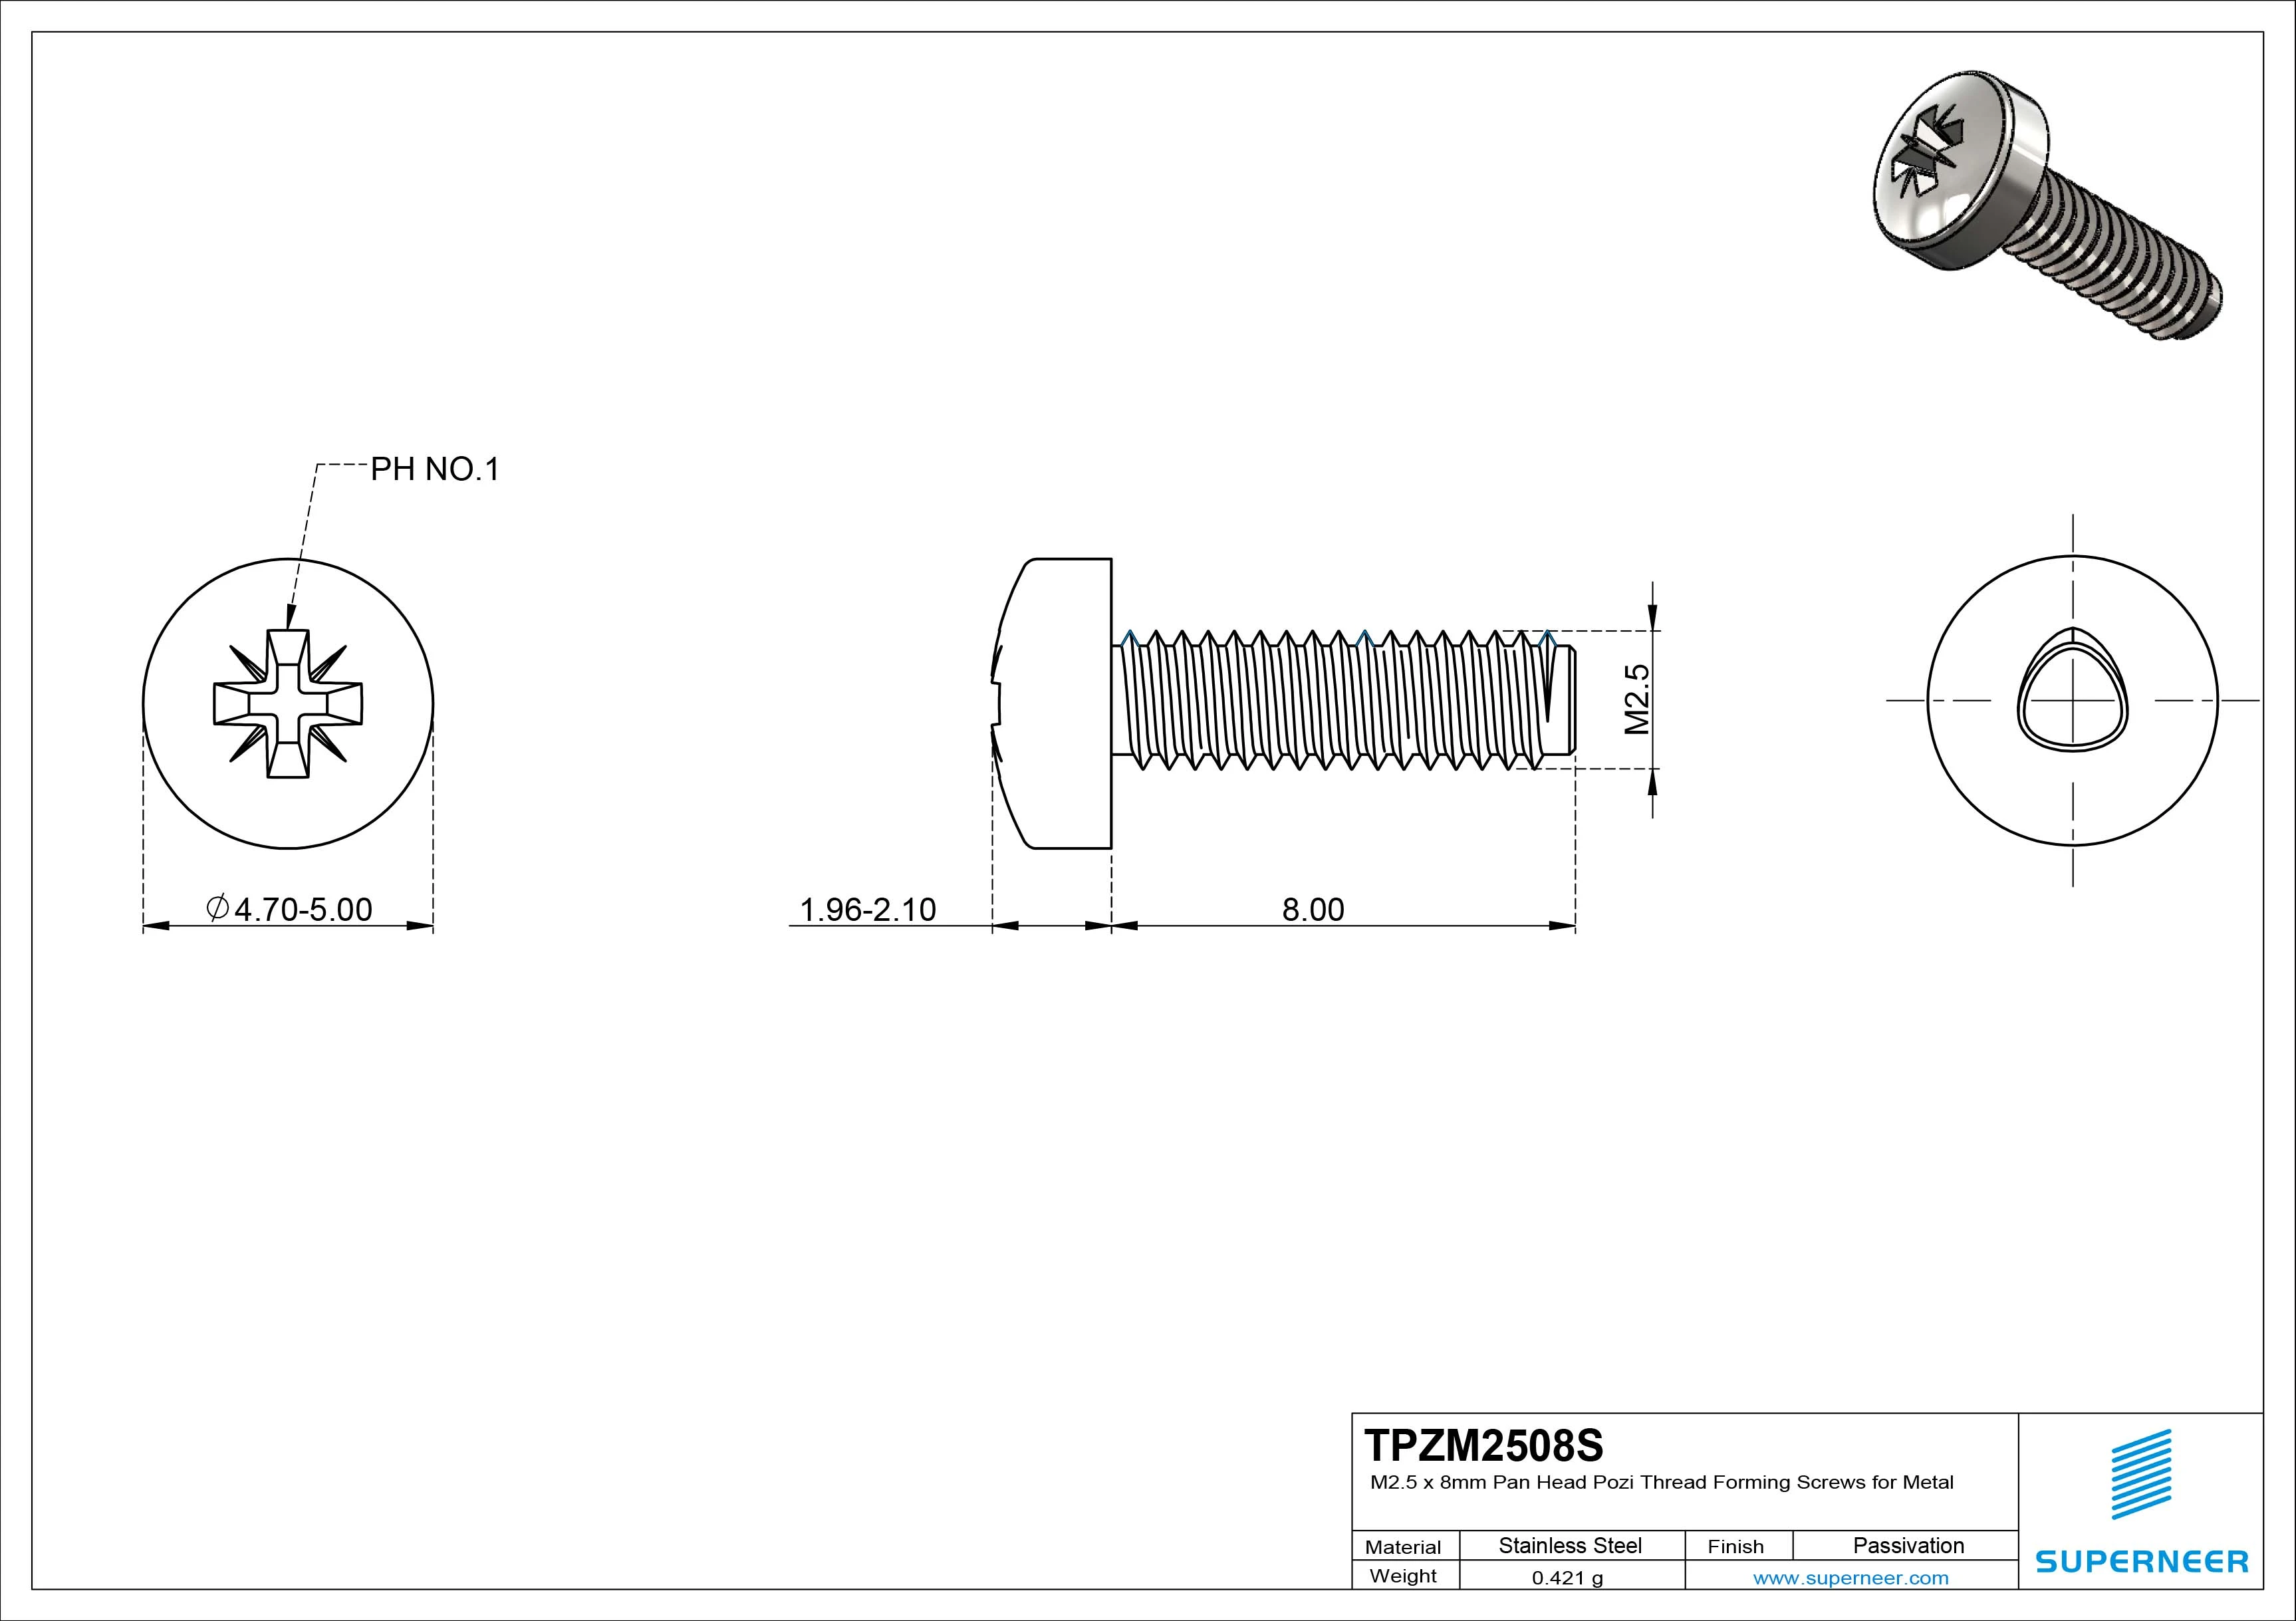 M2.5 × 8mm Pan Head Pozi Thread Forming Screws for Metal SUS304 Stainless Steel Inox